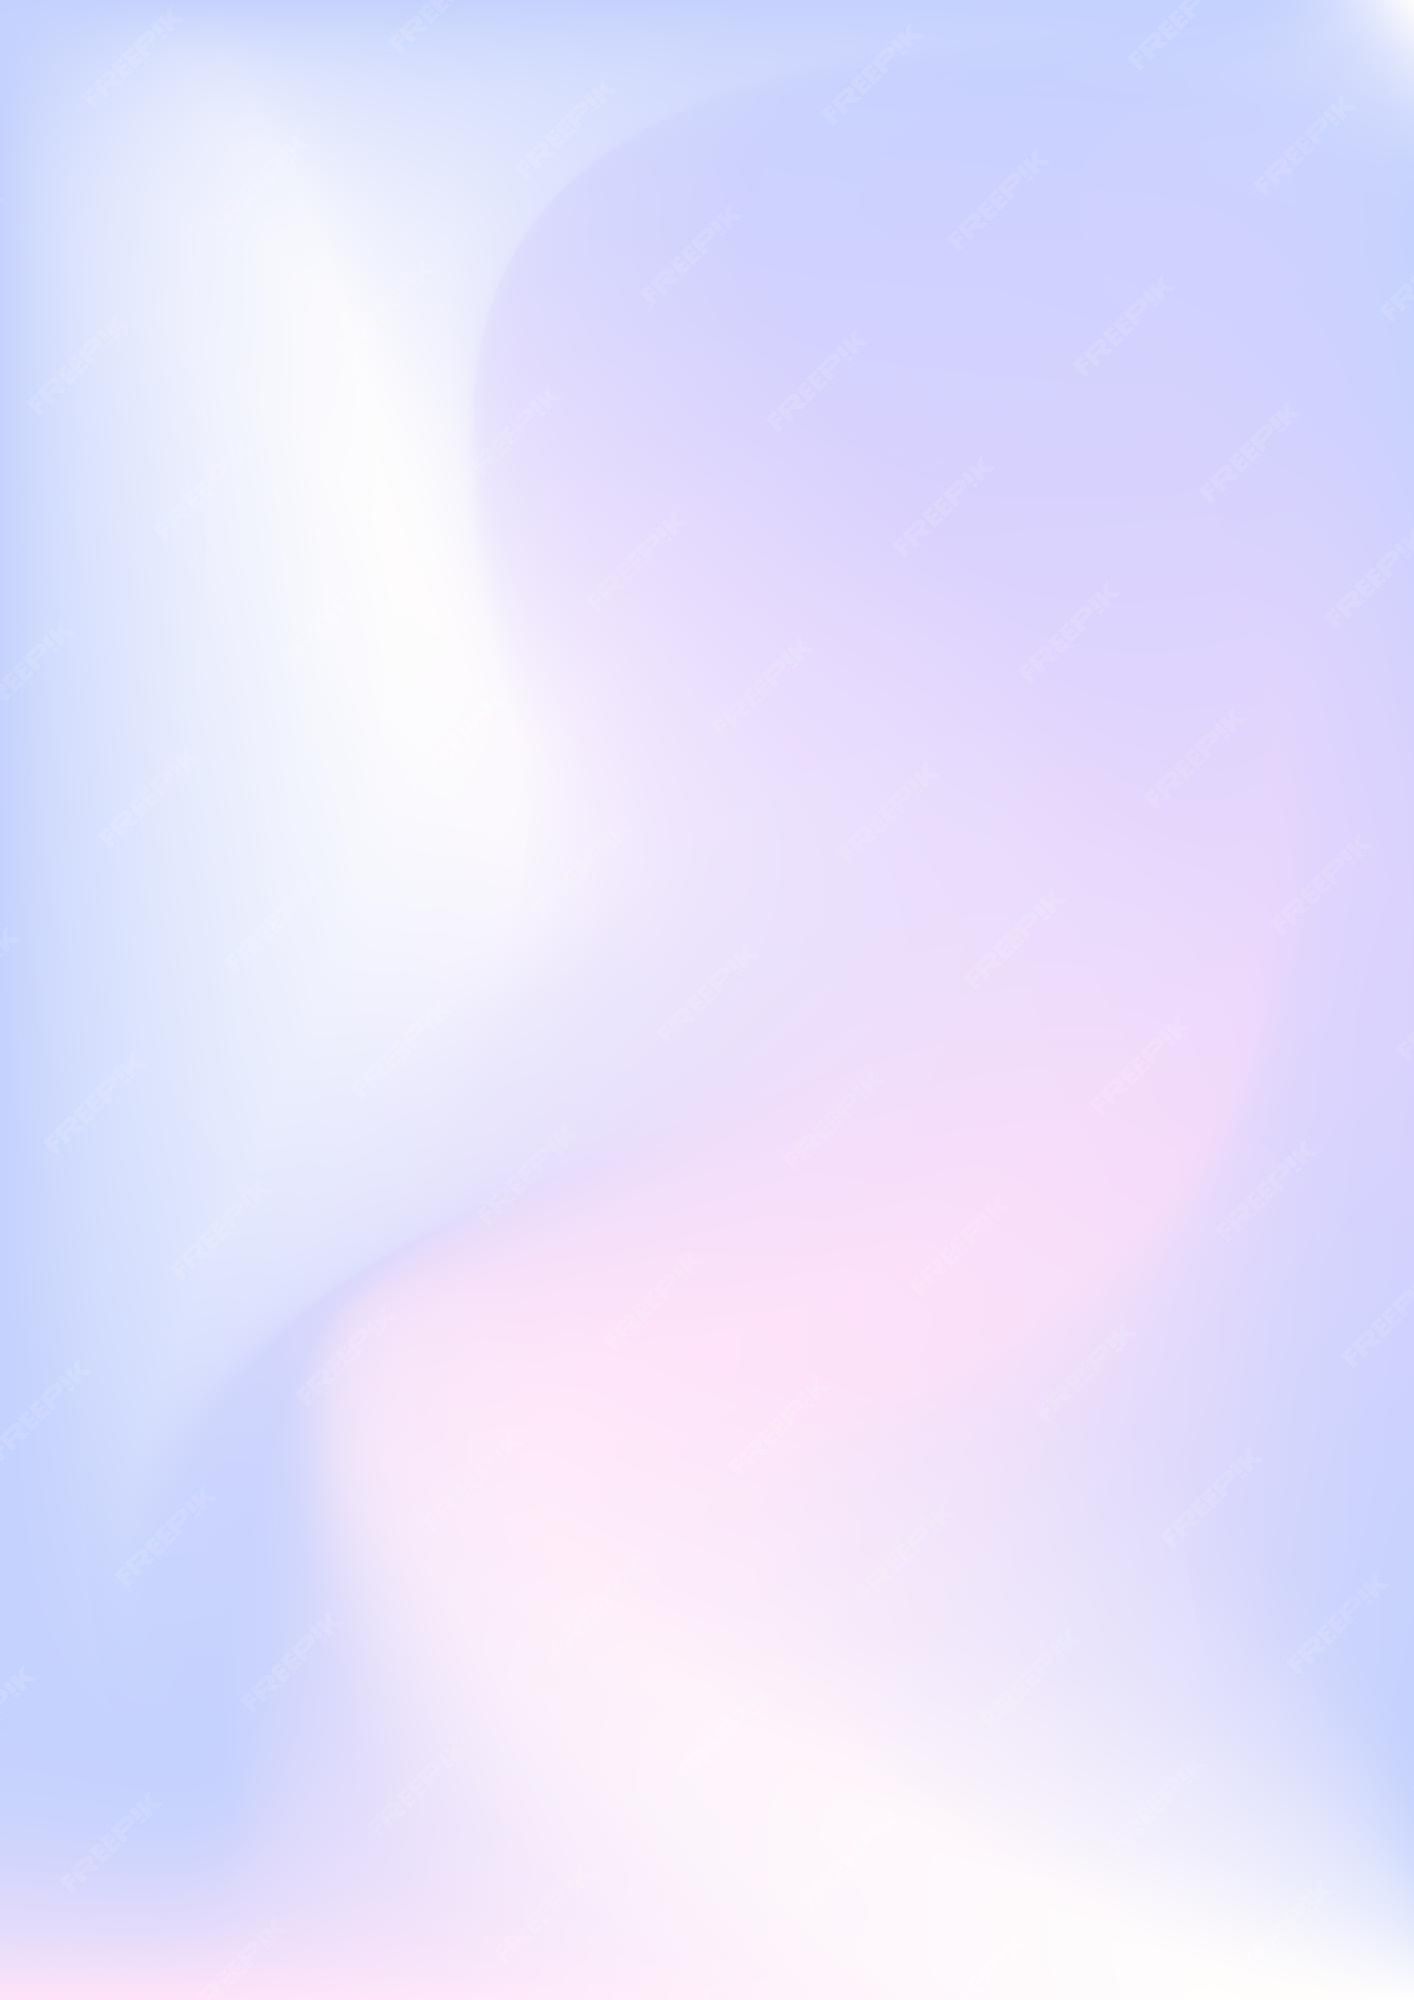  Farbverlauf Hintergrundbild 1414x2000. Abstrakter Mesh Hintergrund Mit Weichem Farbverlauf. Abstrakte, Fließende Illustrationen In Y2k ästhetik